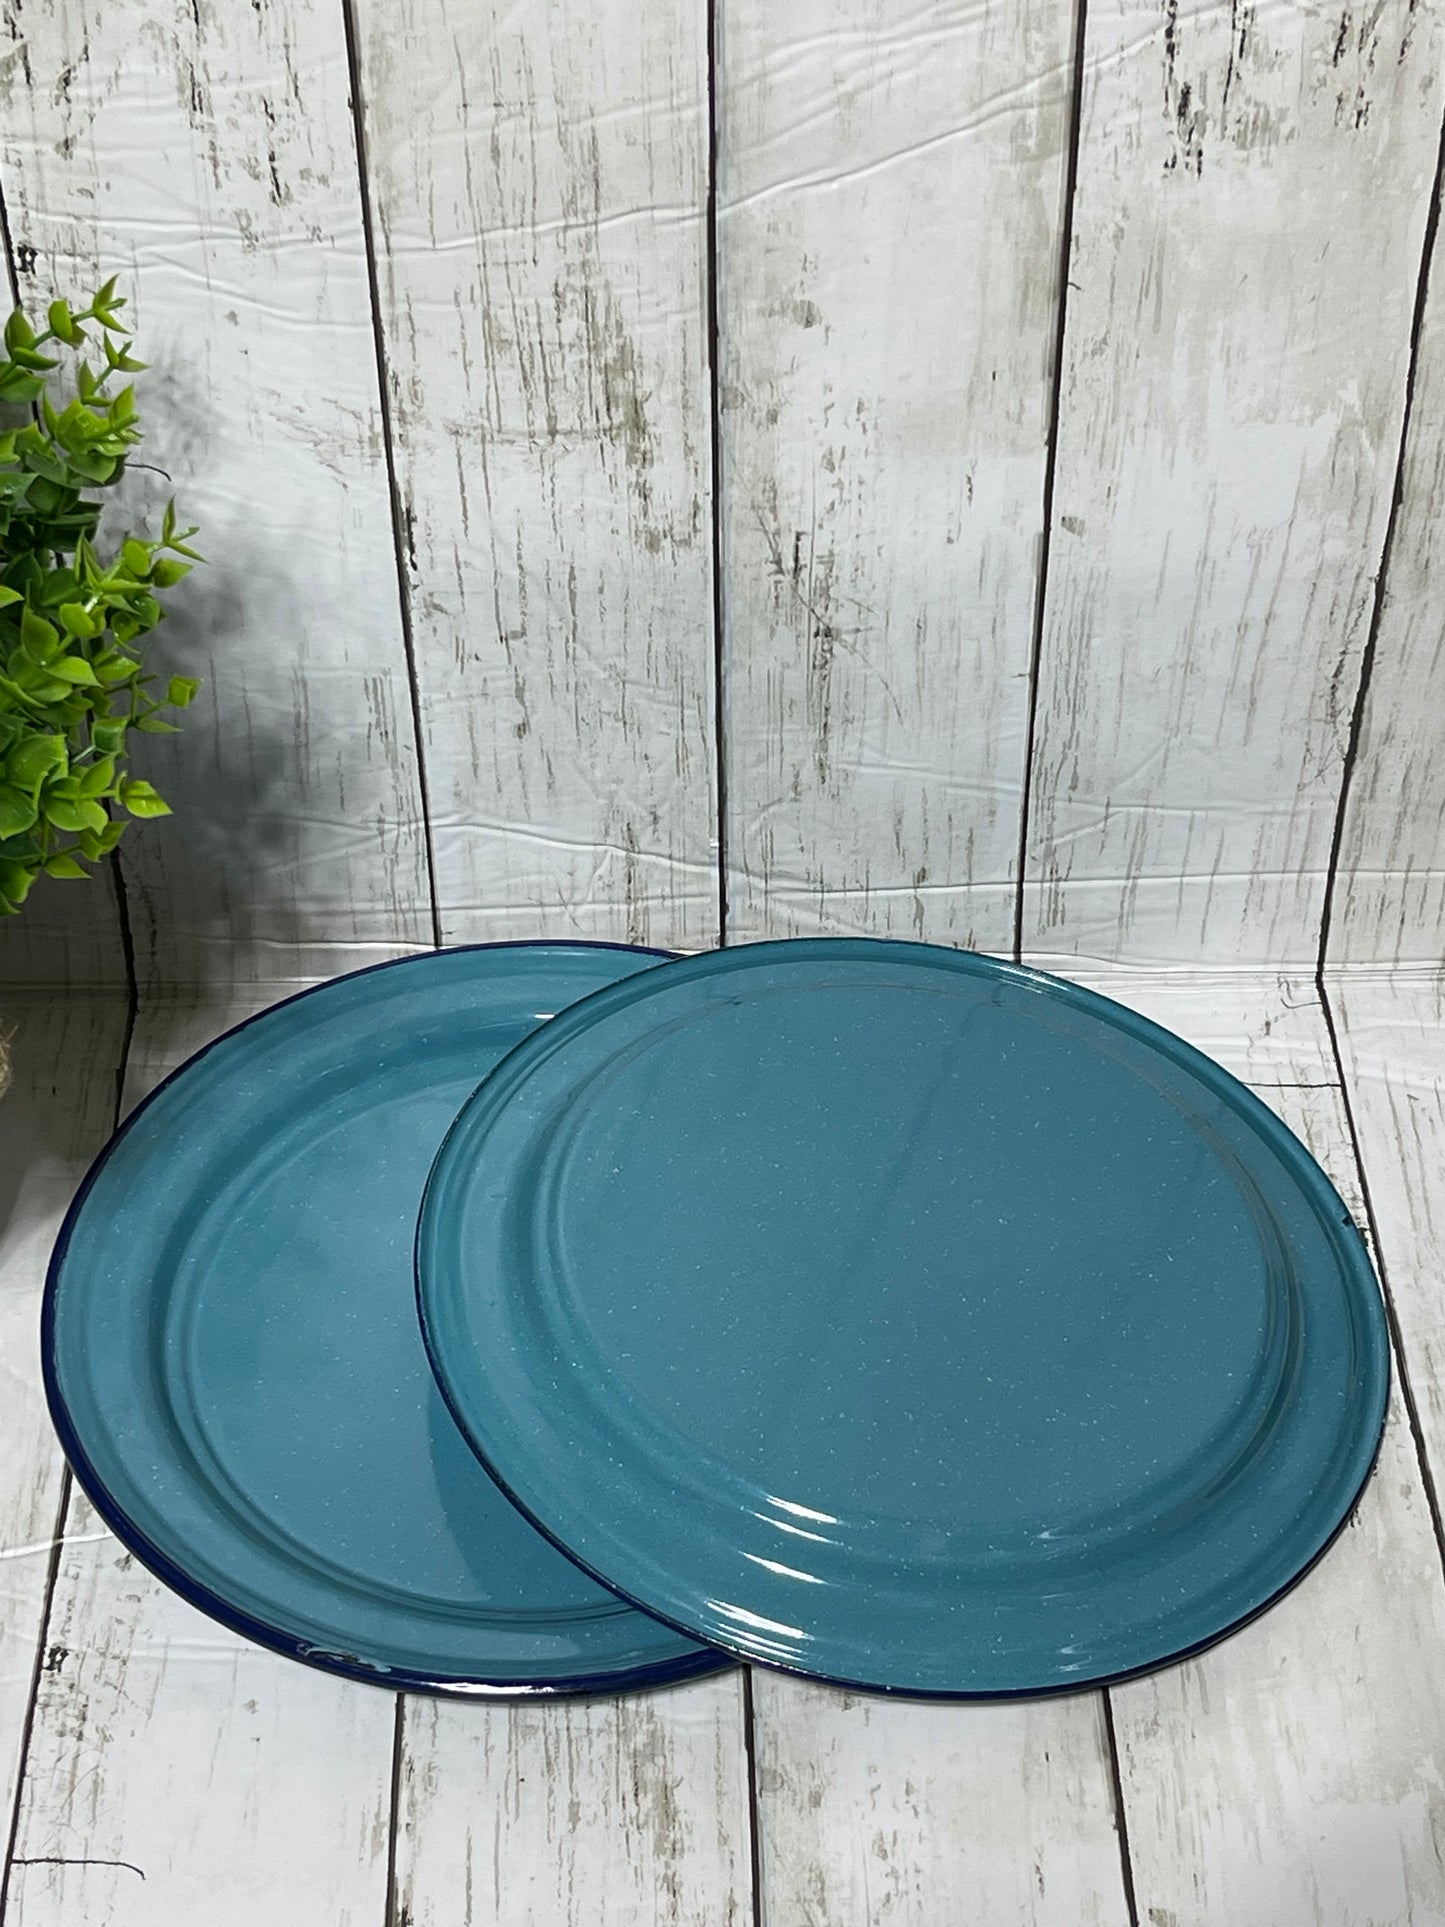 Mexican blue - steel 10” round plate/ Plato trinche peltre azul turquesa